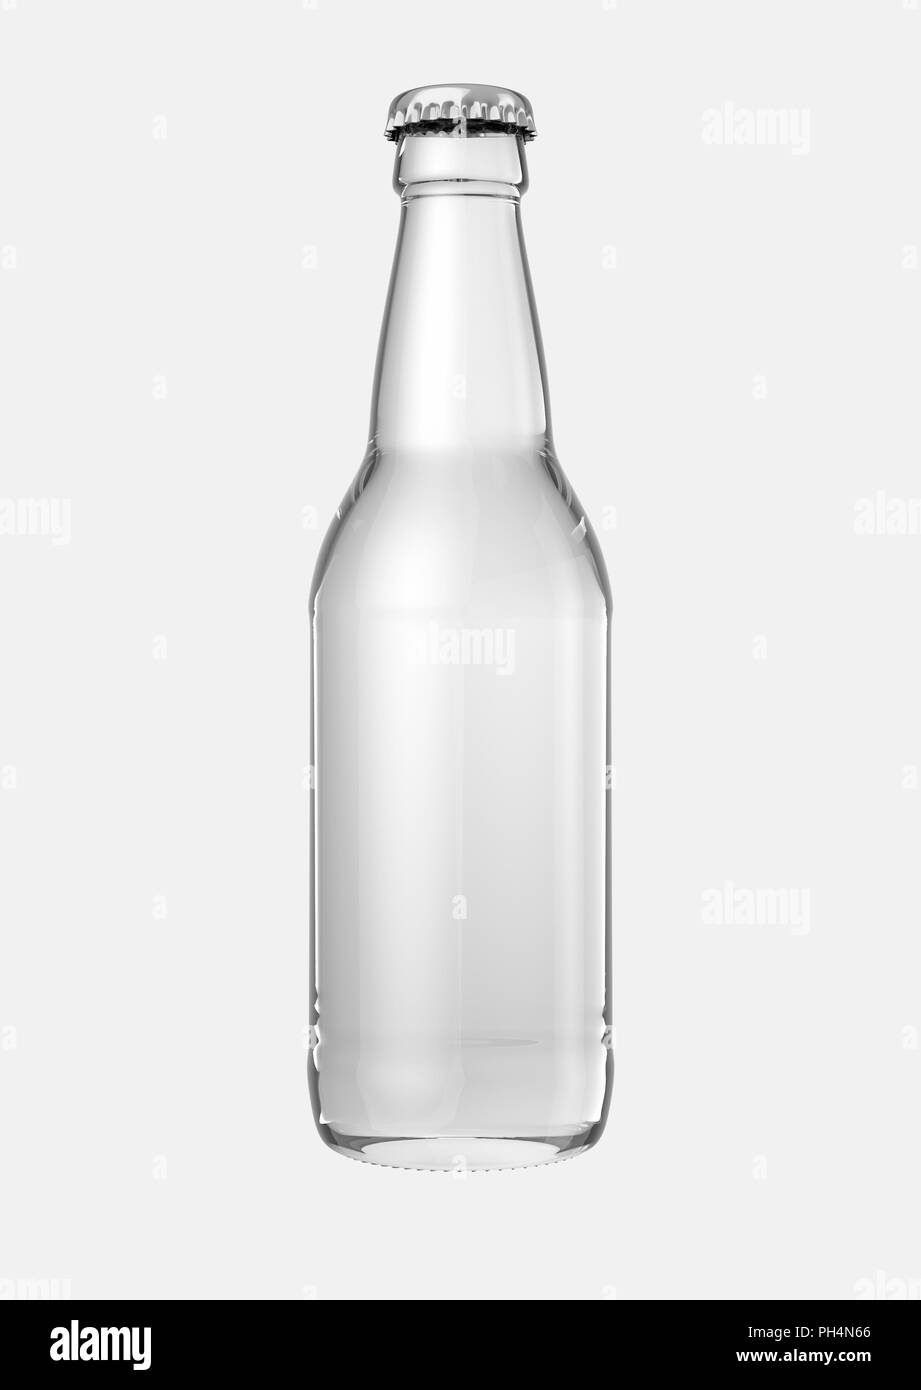 Ein klares Glas Bier Flasche auf einem isolierten weißen studio Hintergrund - 3D-Rendering Stockfoto